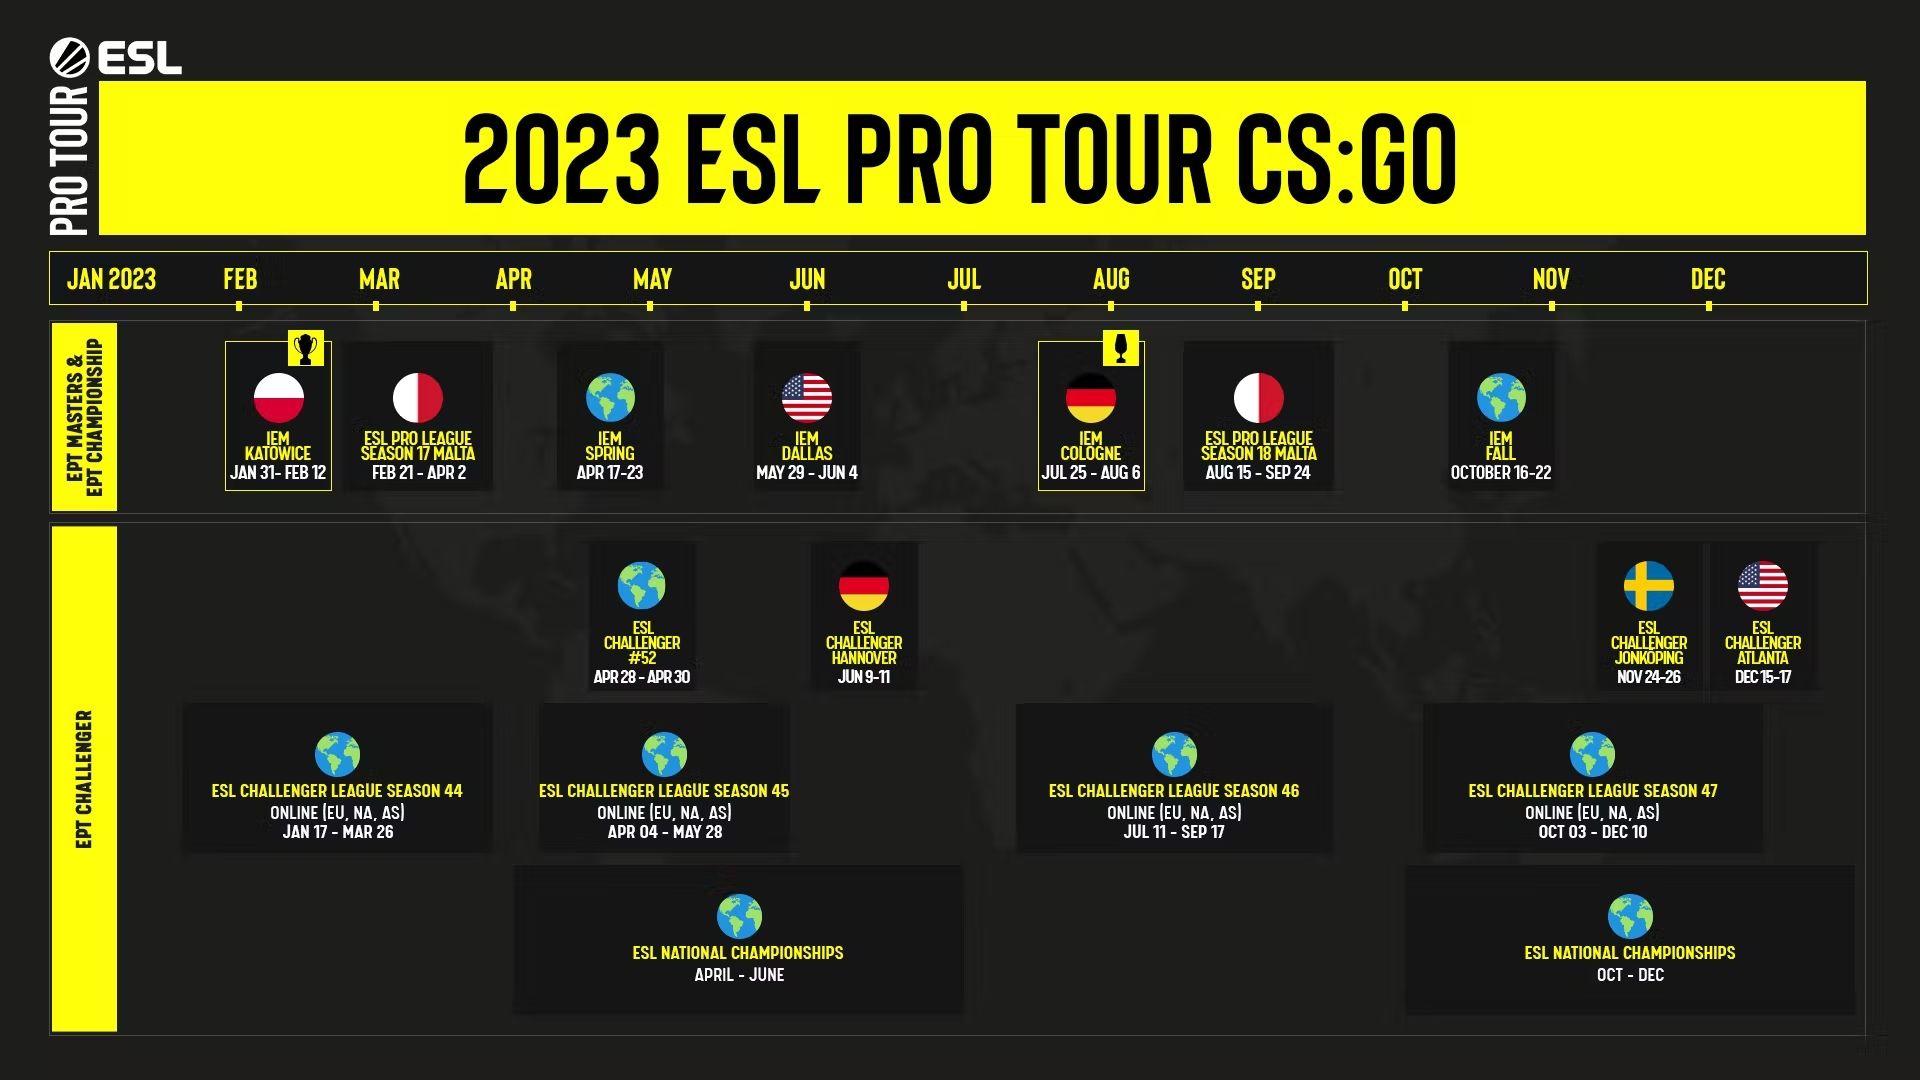 Расписание турниров ESL на 2023 год. Источник: ESL